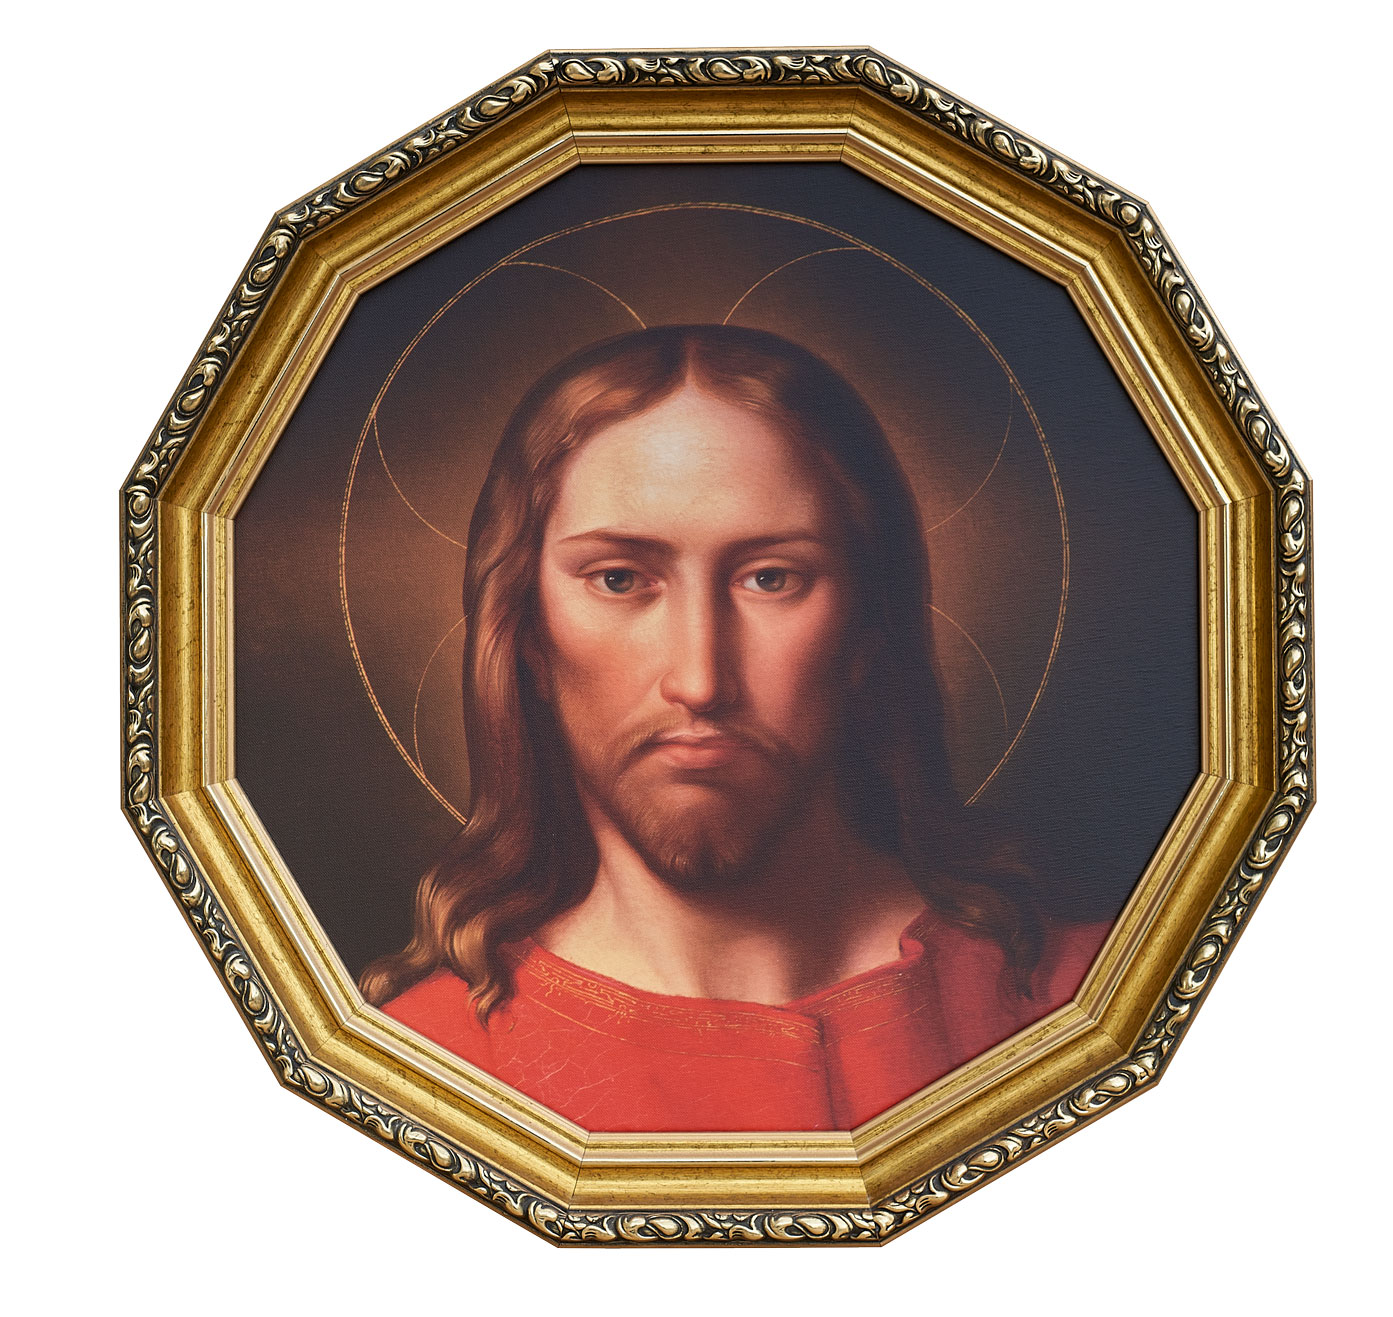 Twarz Jezusa - KOŁO - 62 cm - 09 - Obraz religijny w ramie ozdobnej G złotej